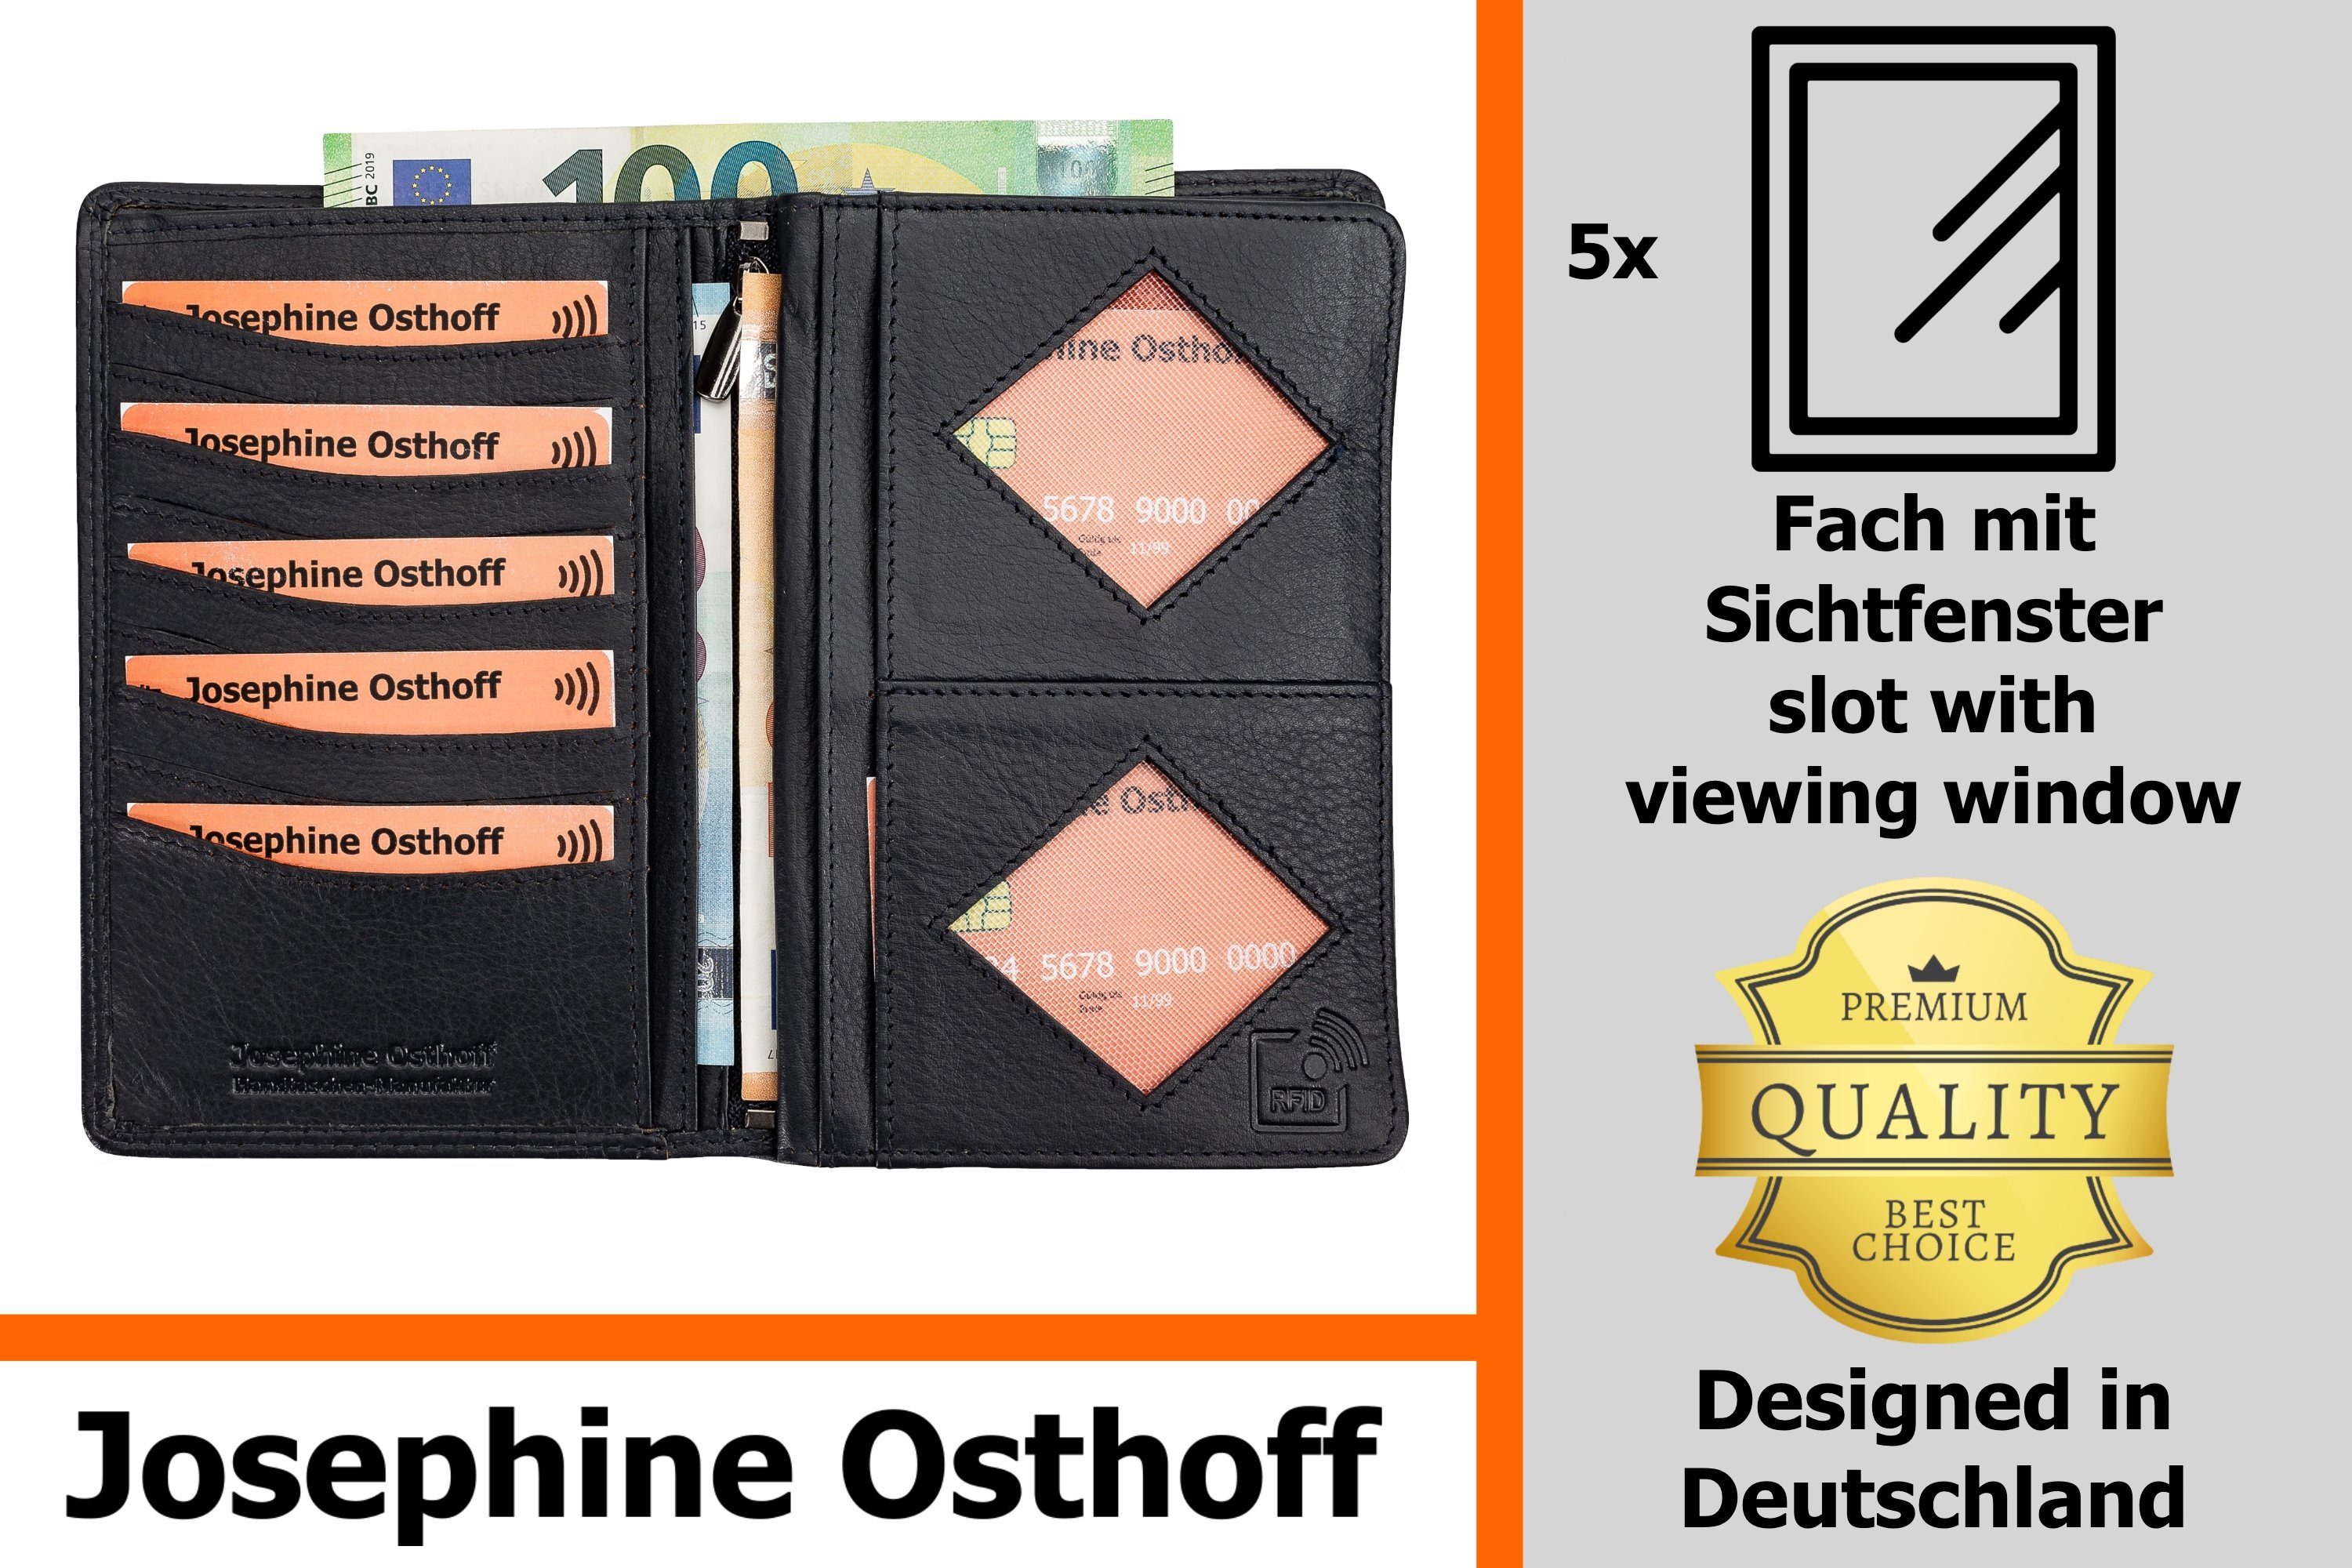 Brieftasche Brieftasche marine Osthoff Josephine